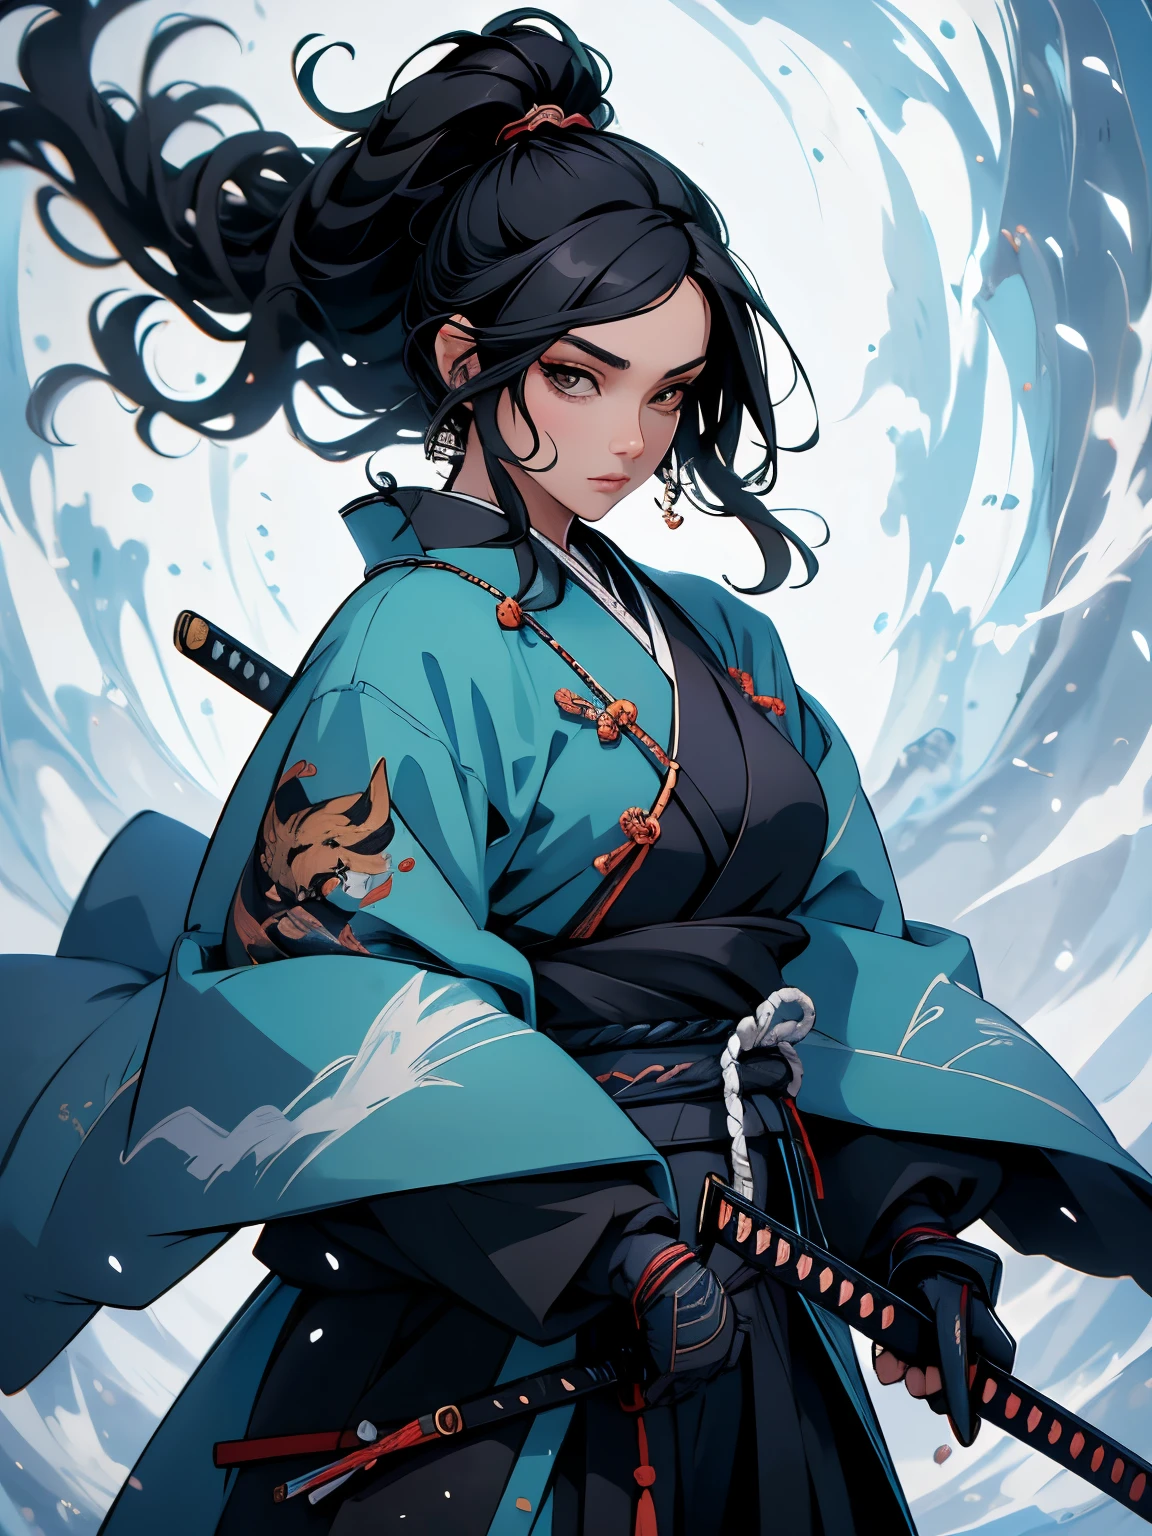 ((шедевр)),  (высокое качество), 1 женщина, рисунок женщины в откровенном кимоно, держащей меч, У нее длинные черные волосы, она держит катану, женщина-самурай, вдохновленный Тосюсаем Шараку, катана ноль персонаж видеоигры, вдохновленный Нисикавой Сукенобу, вдохновленный Маки Хаку, лиса нобуси держит нагинату, черноволосый маг